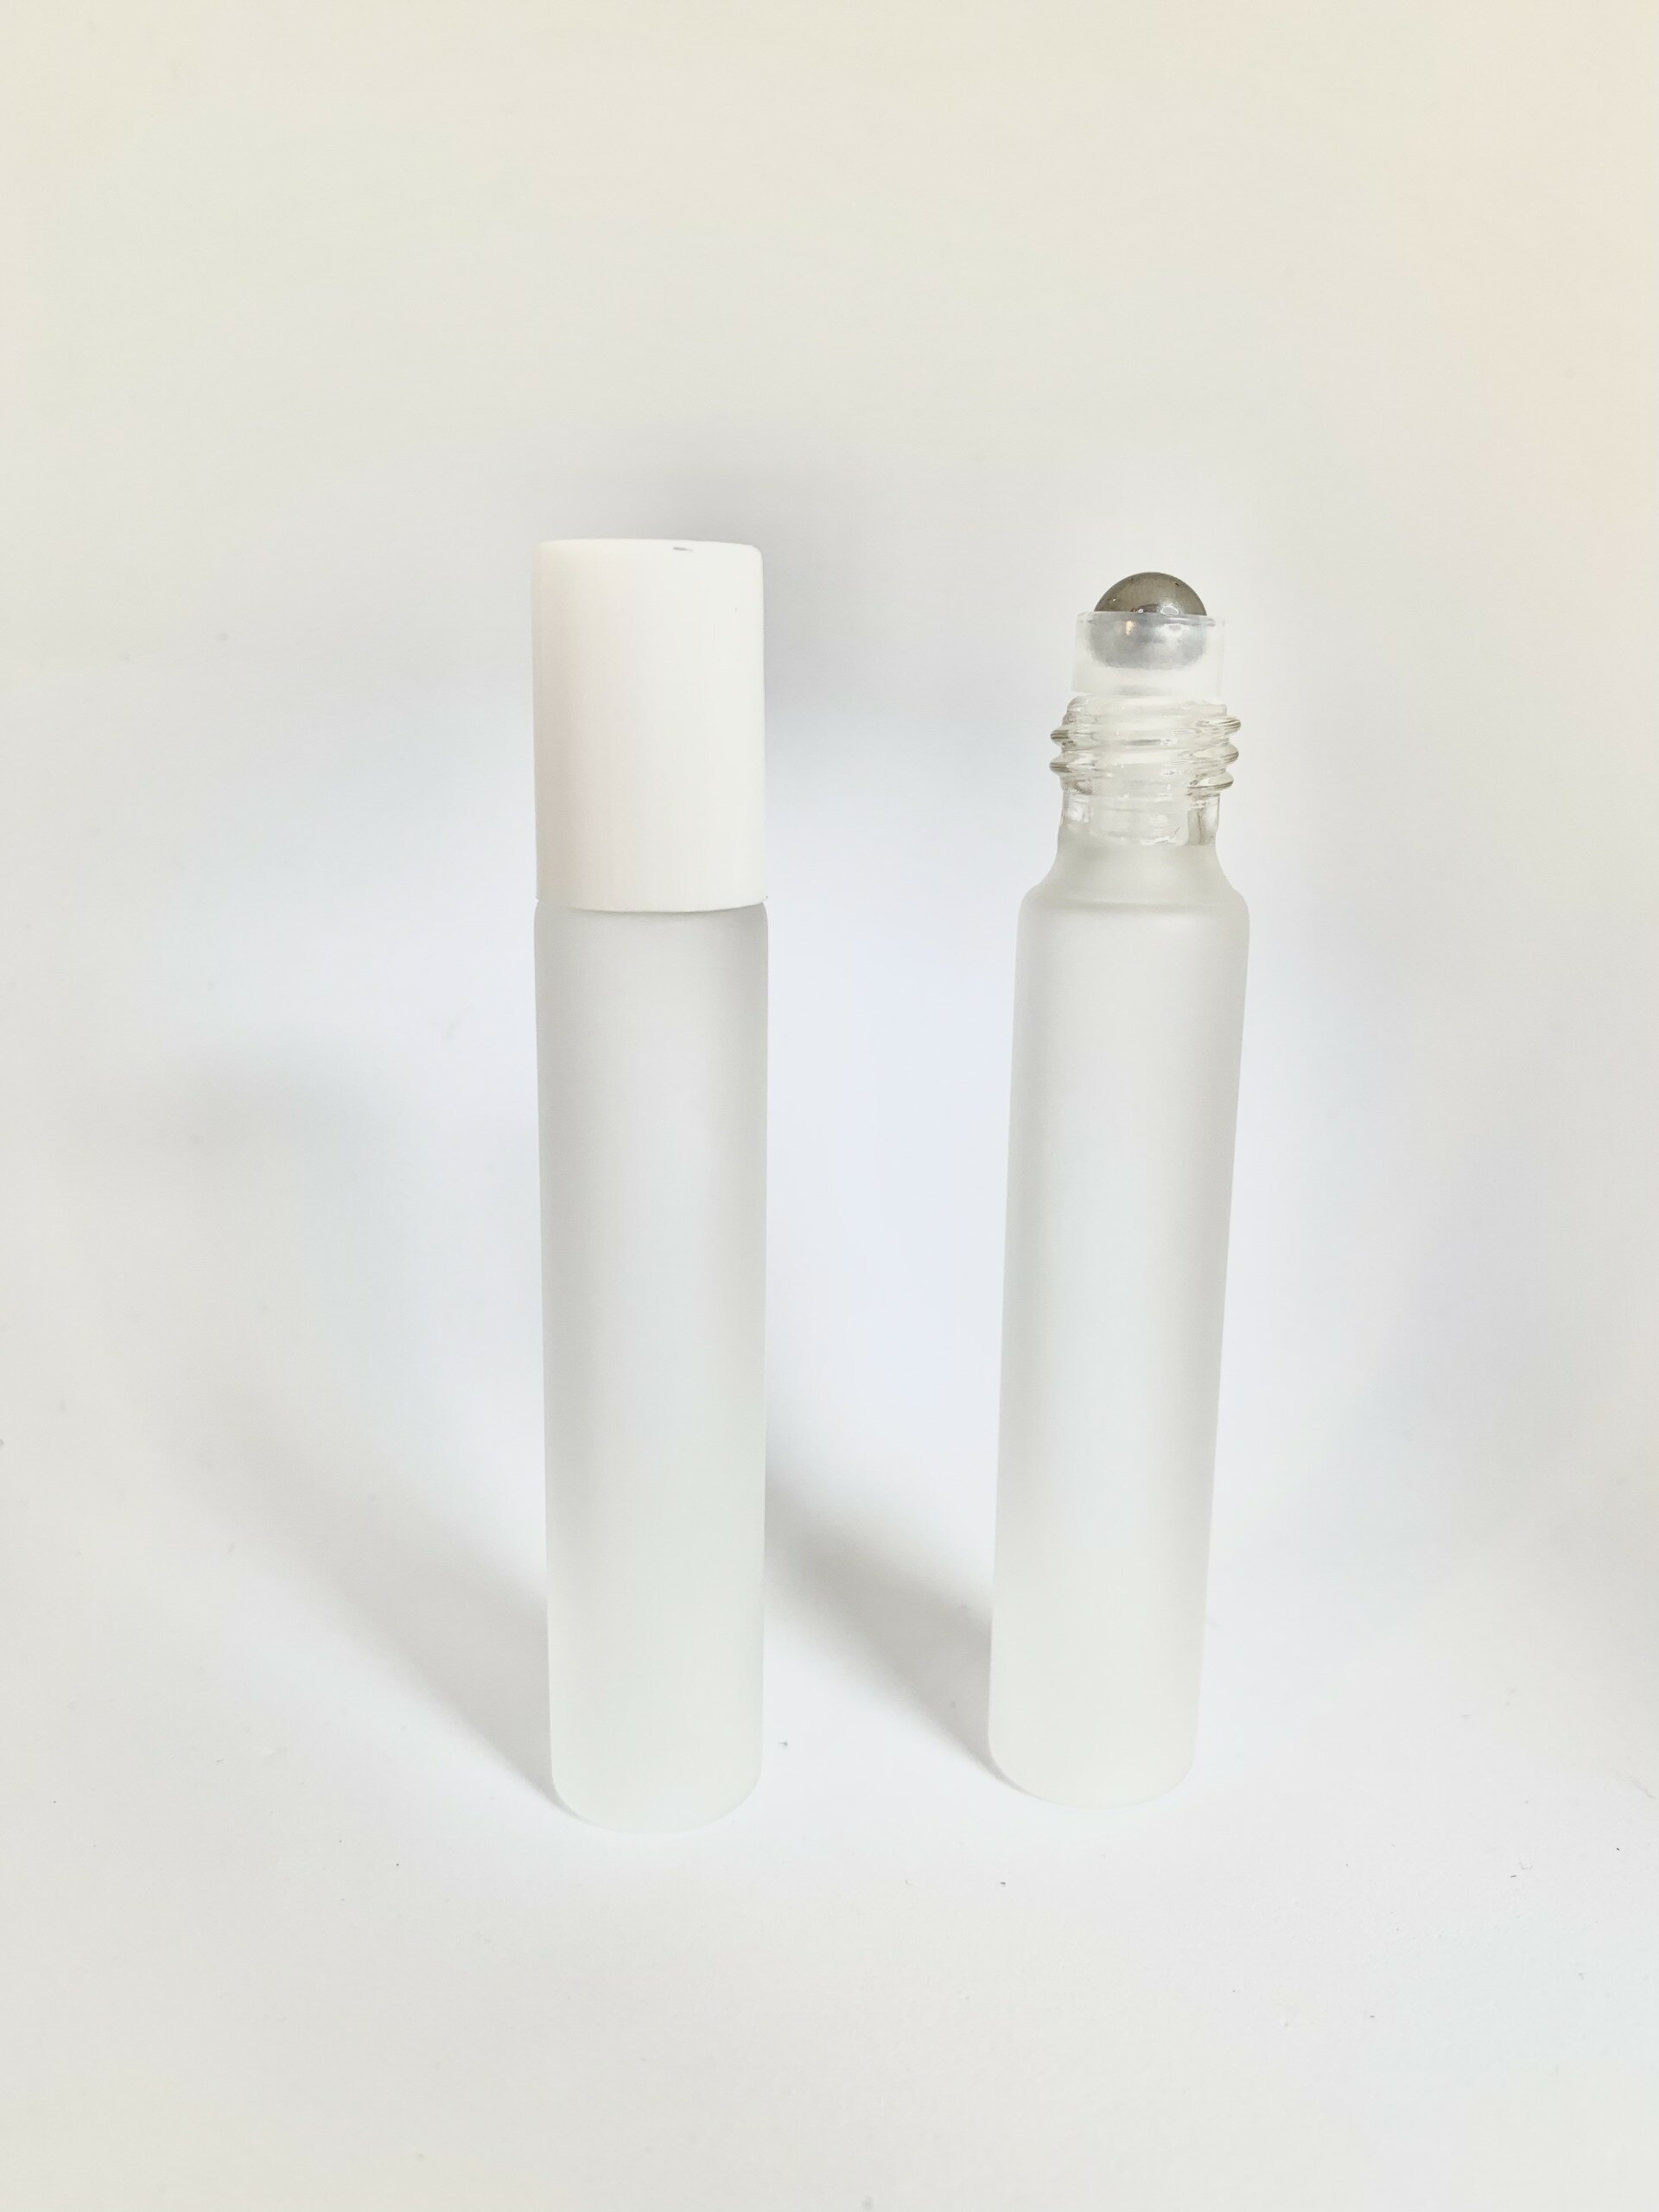 ホワイトキャップ 高級 10ml フロスト加工 乳白色 遮光瓶 ガラス製 化粧水 容器 美容液 香水 詰替え用 詰替 旅行